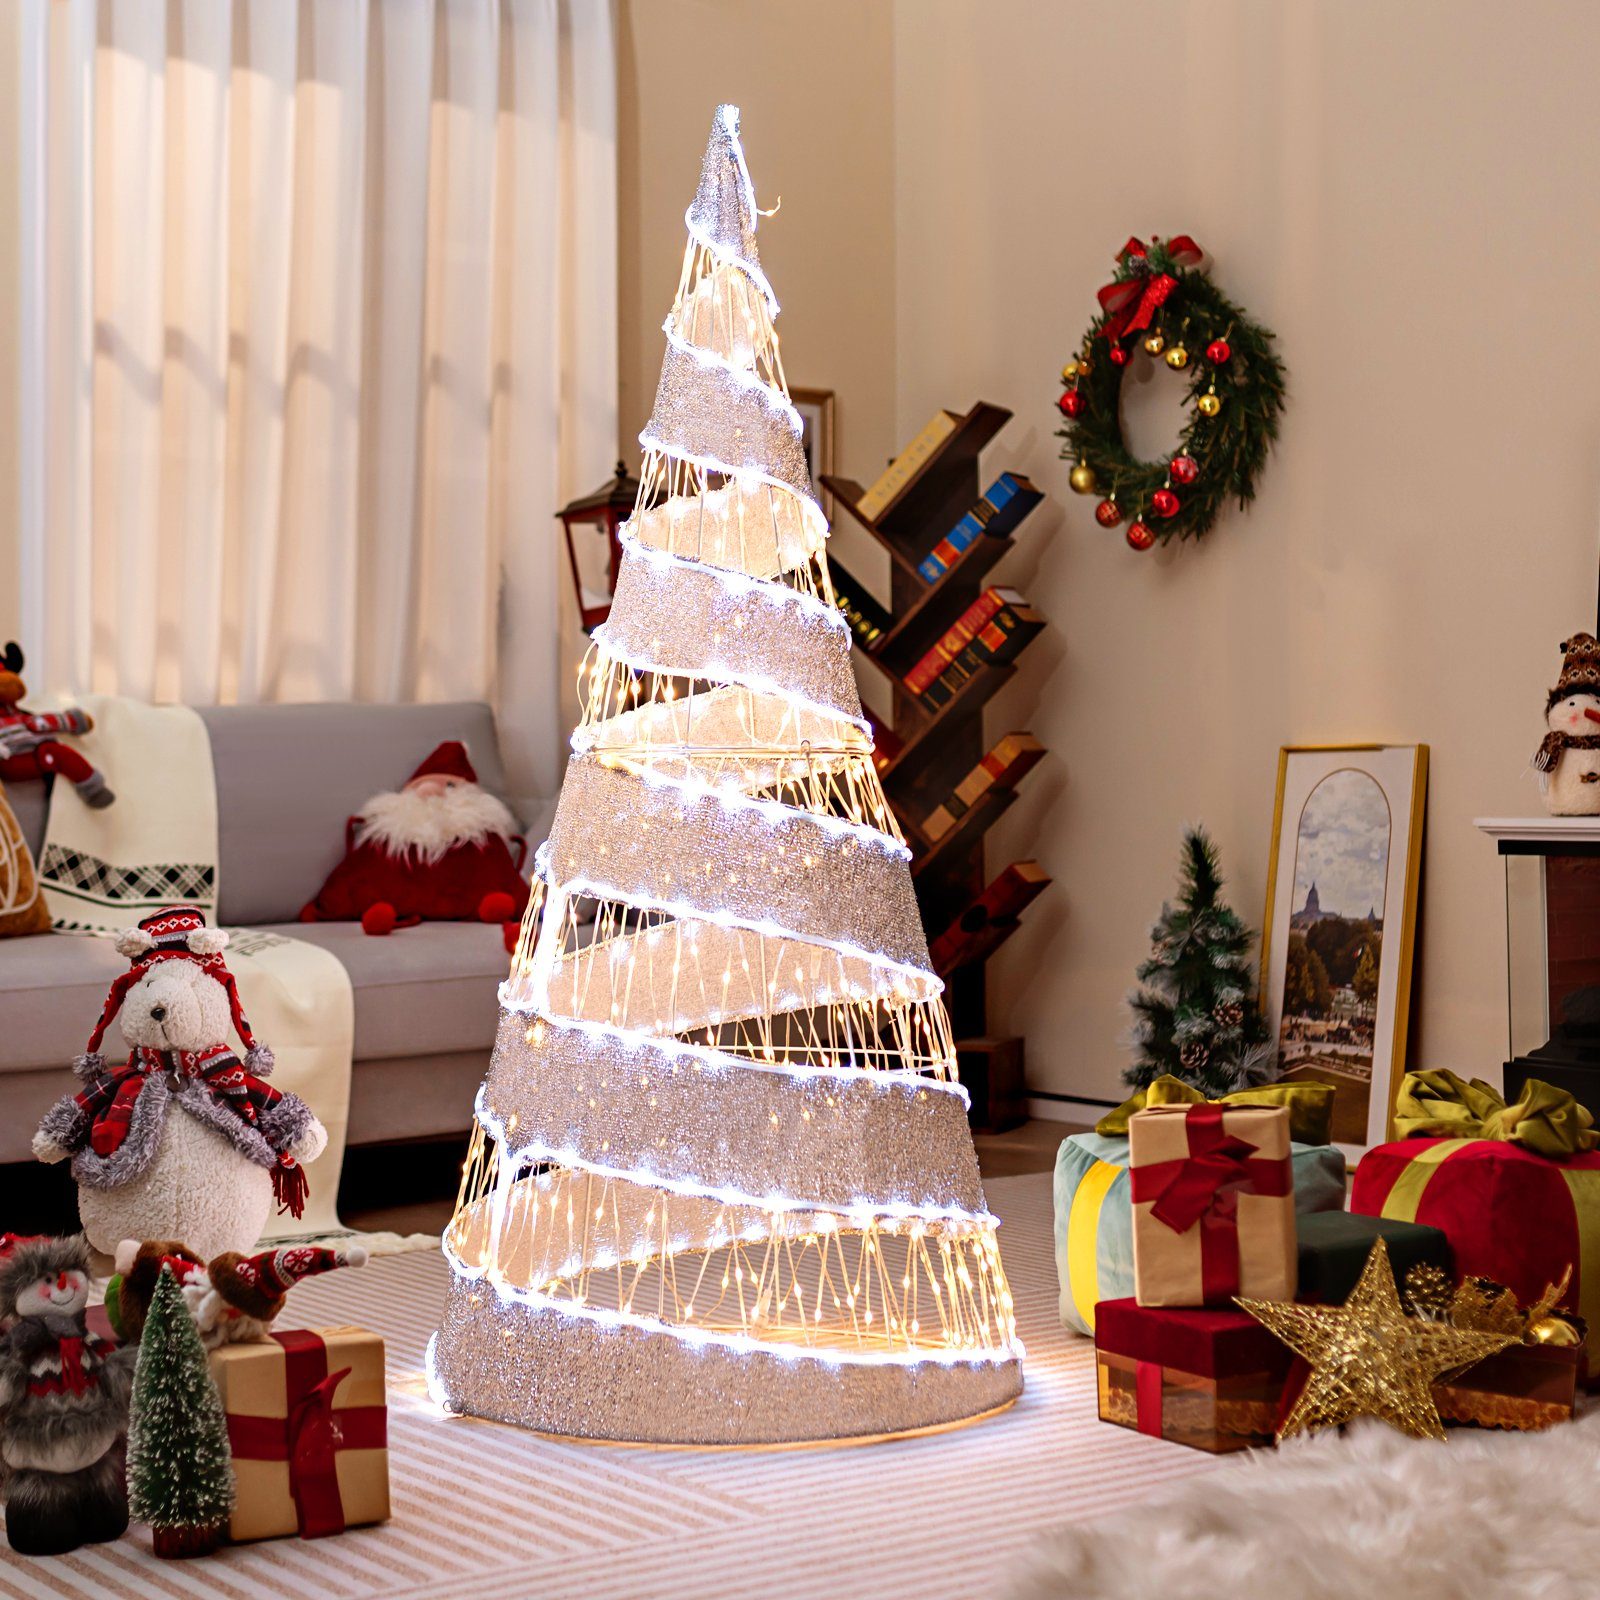 Künstlicher COSTWAY 155cm, klappbar Weihnachtsbaum, Weihnachtsdeko 550 LEDs